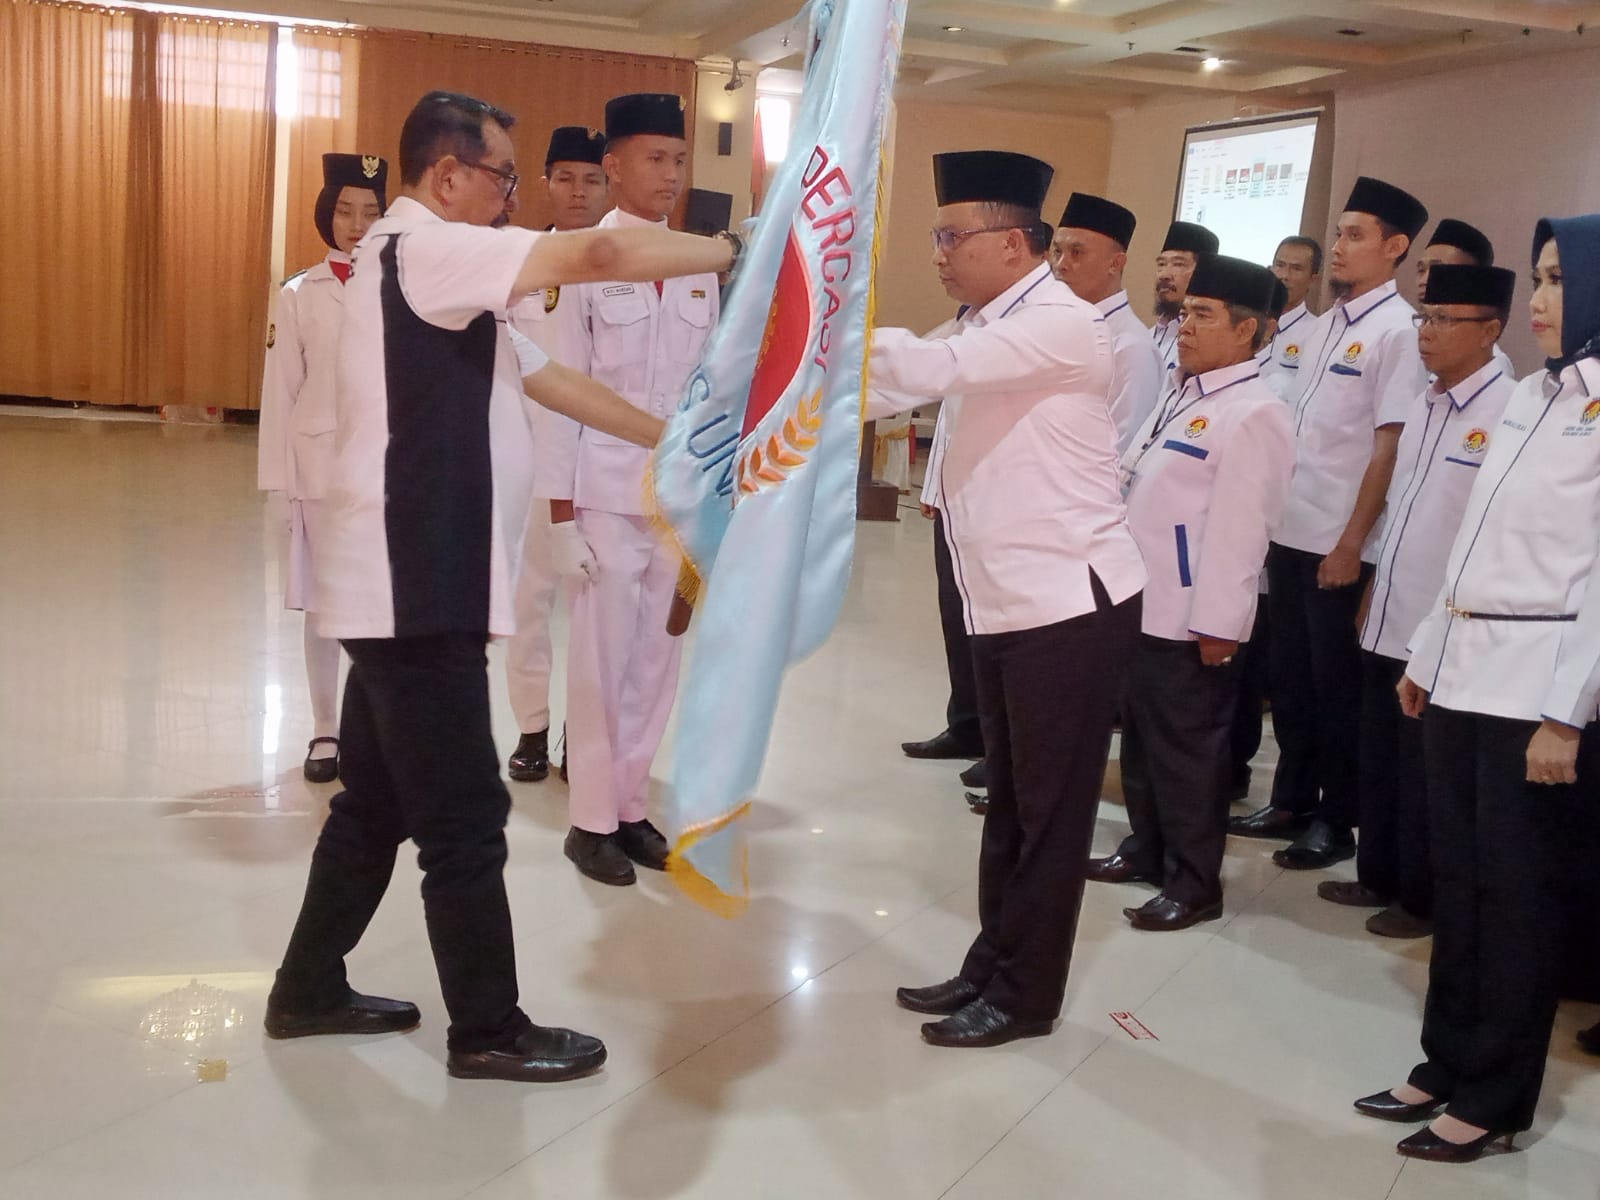 Ketua Percasi Musi Rawas 2022-2026 Benny Chandra Kibarkan Bendera Percasi Dengan Penuh Bangga